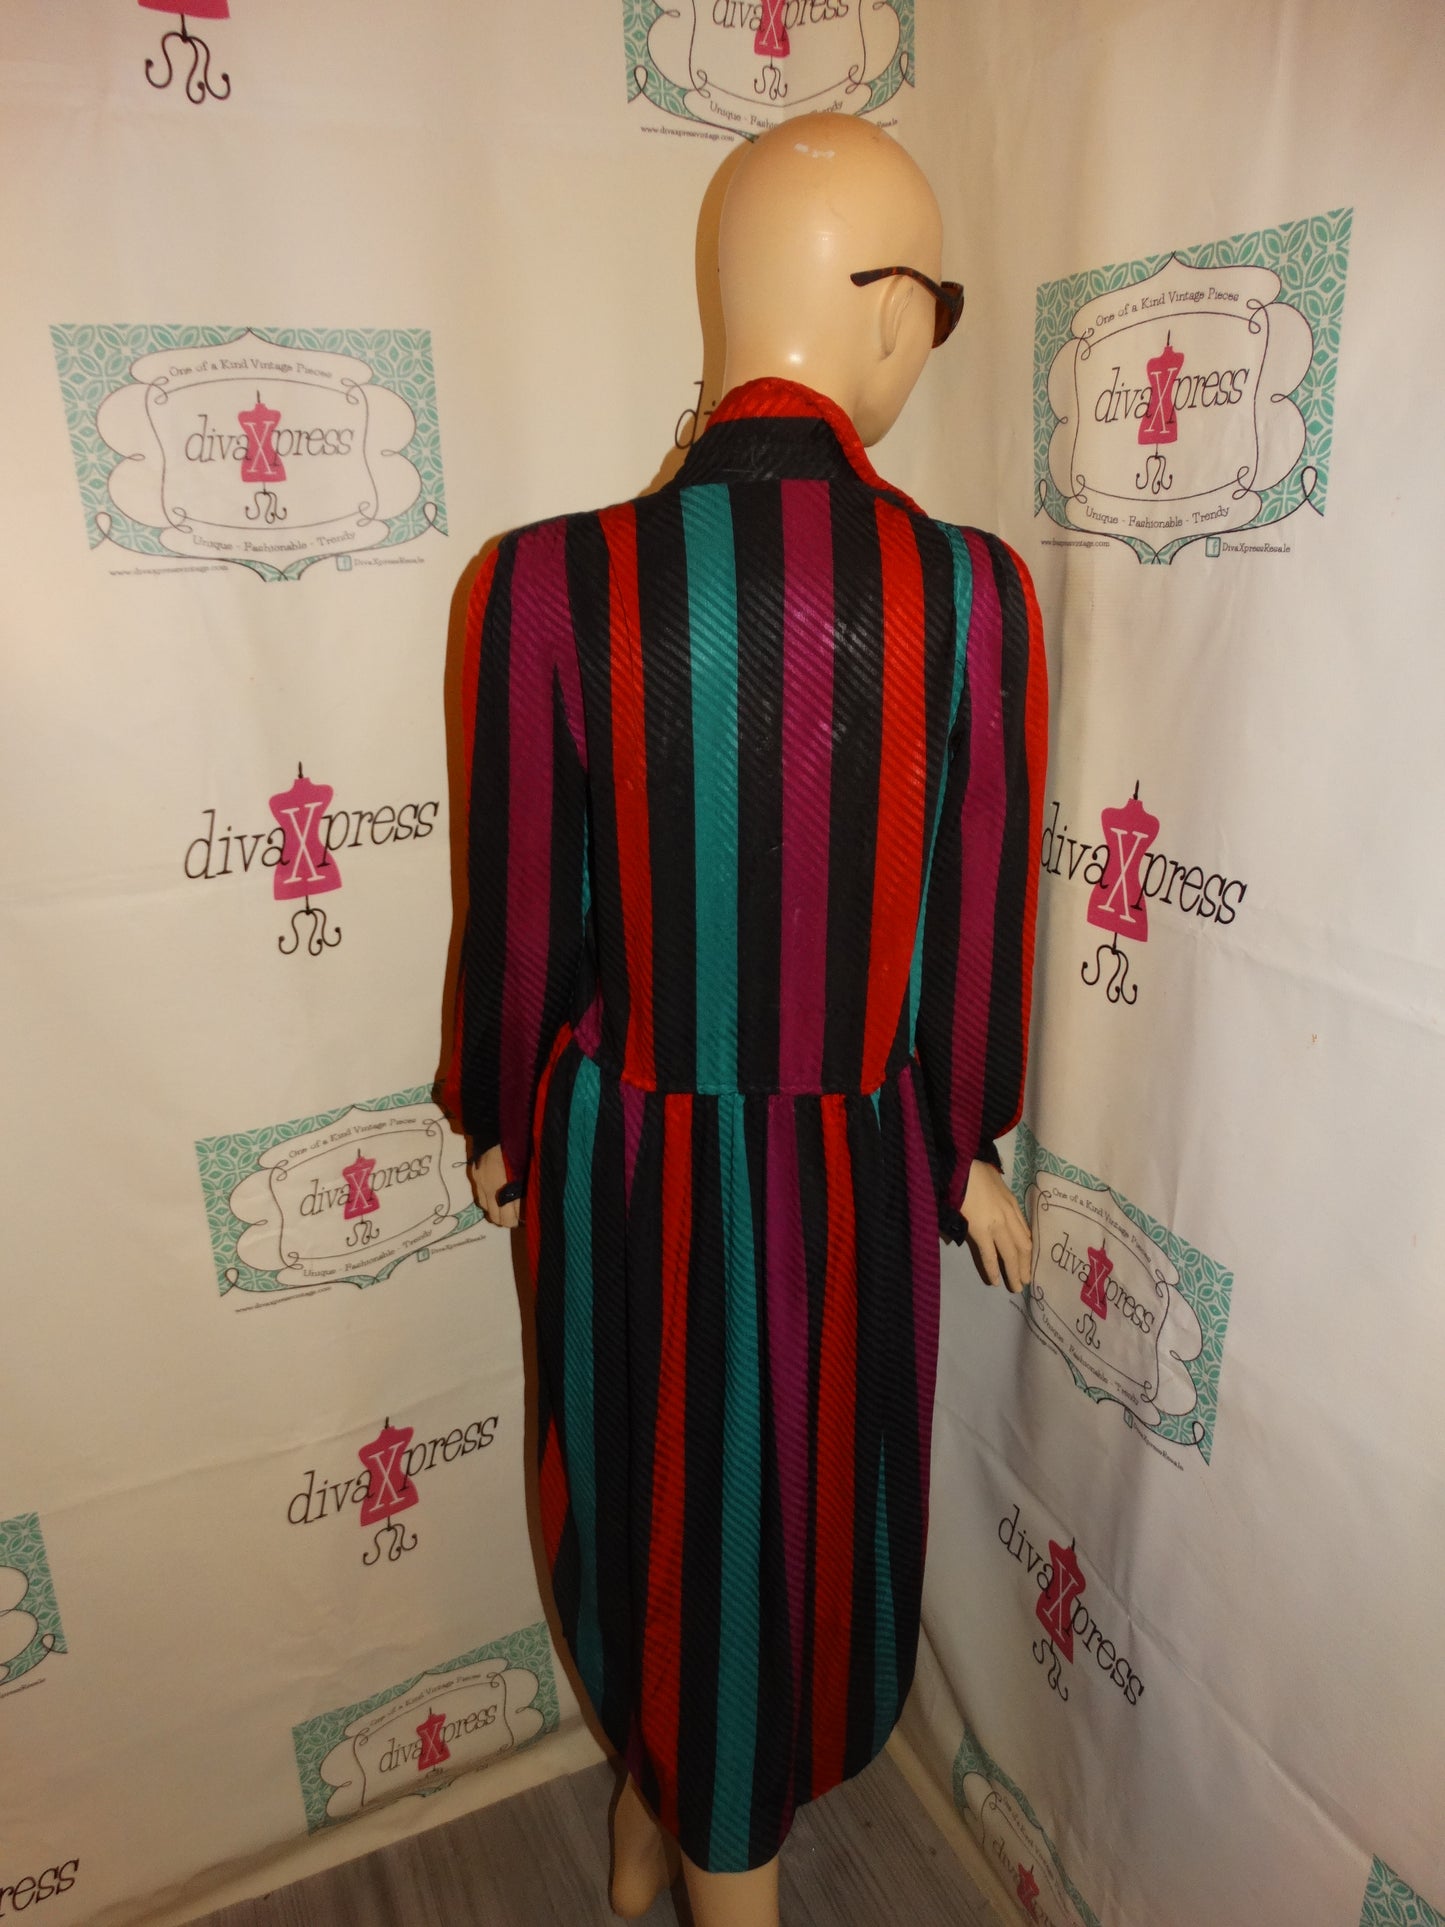 Vintage Liz Claiborne Black Colorful Stripe Dress Size M